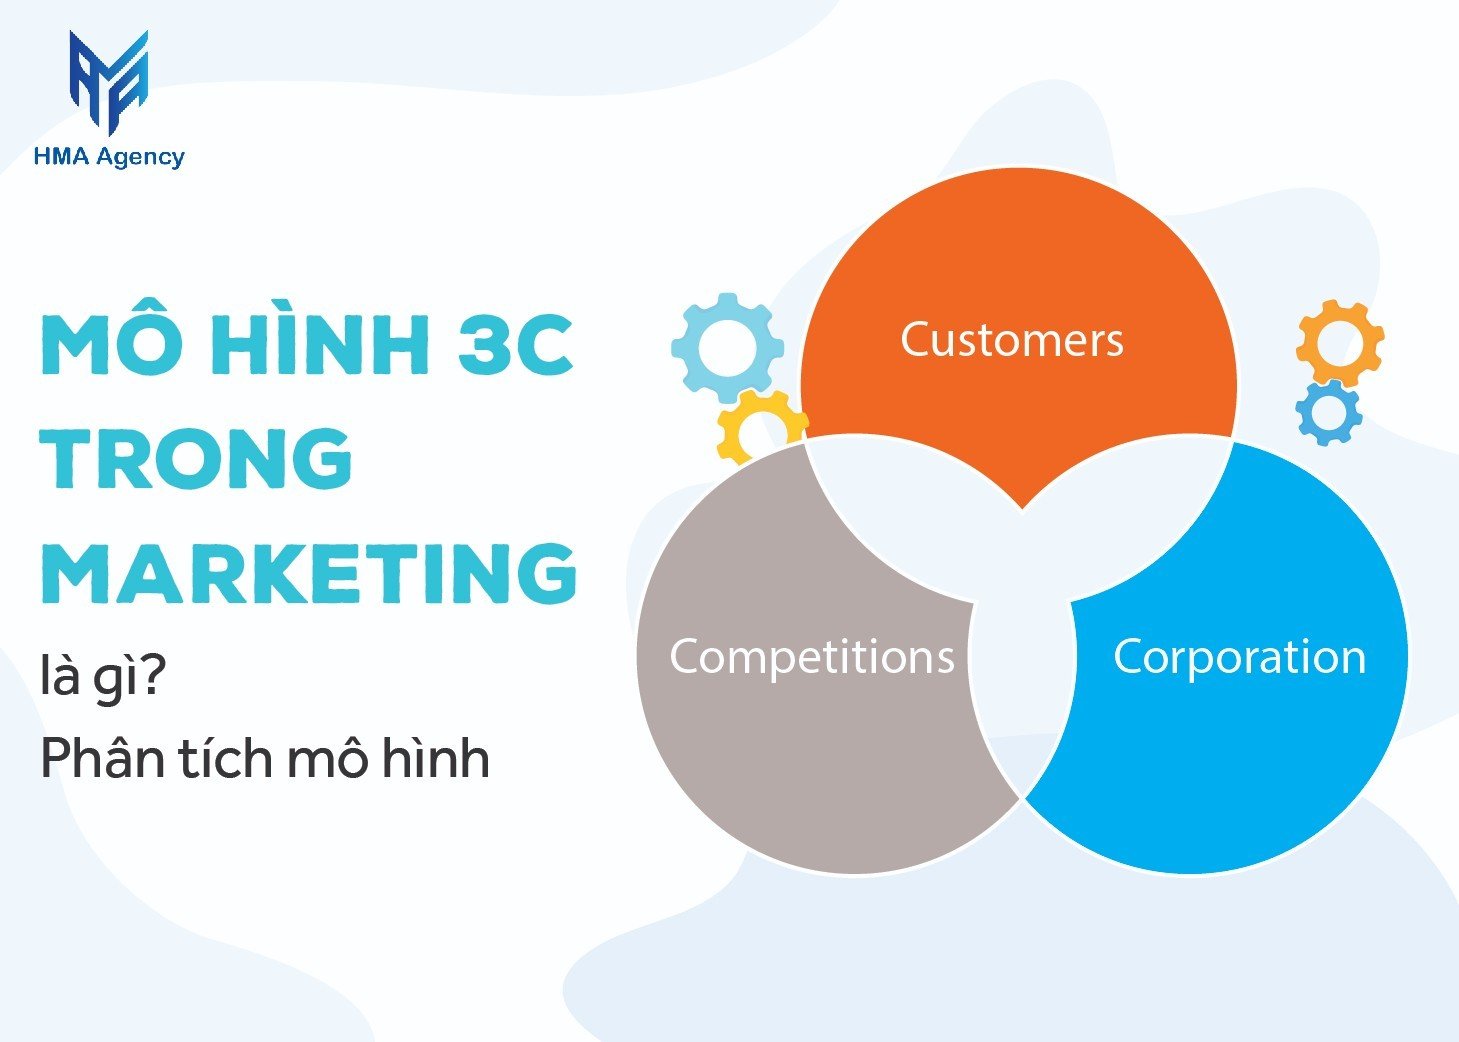 Mô hình 3C trong Marketing